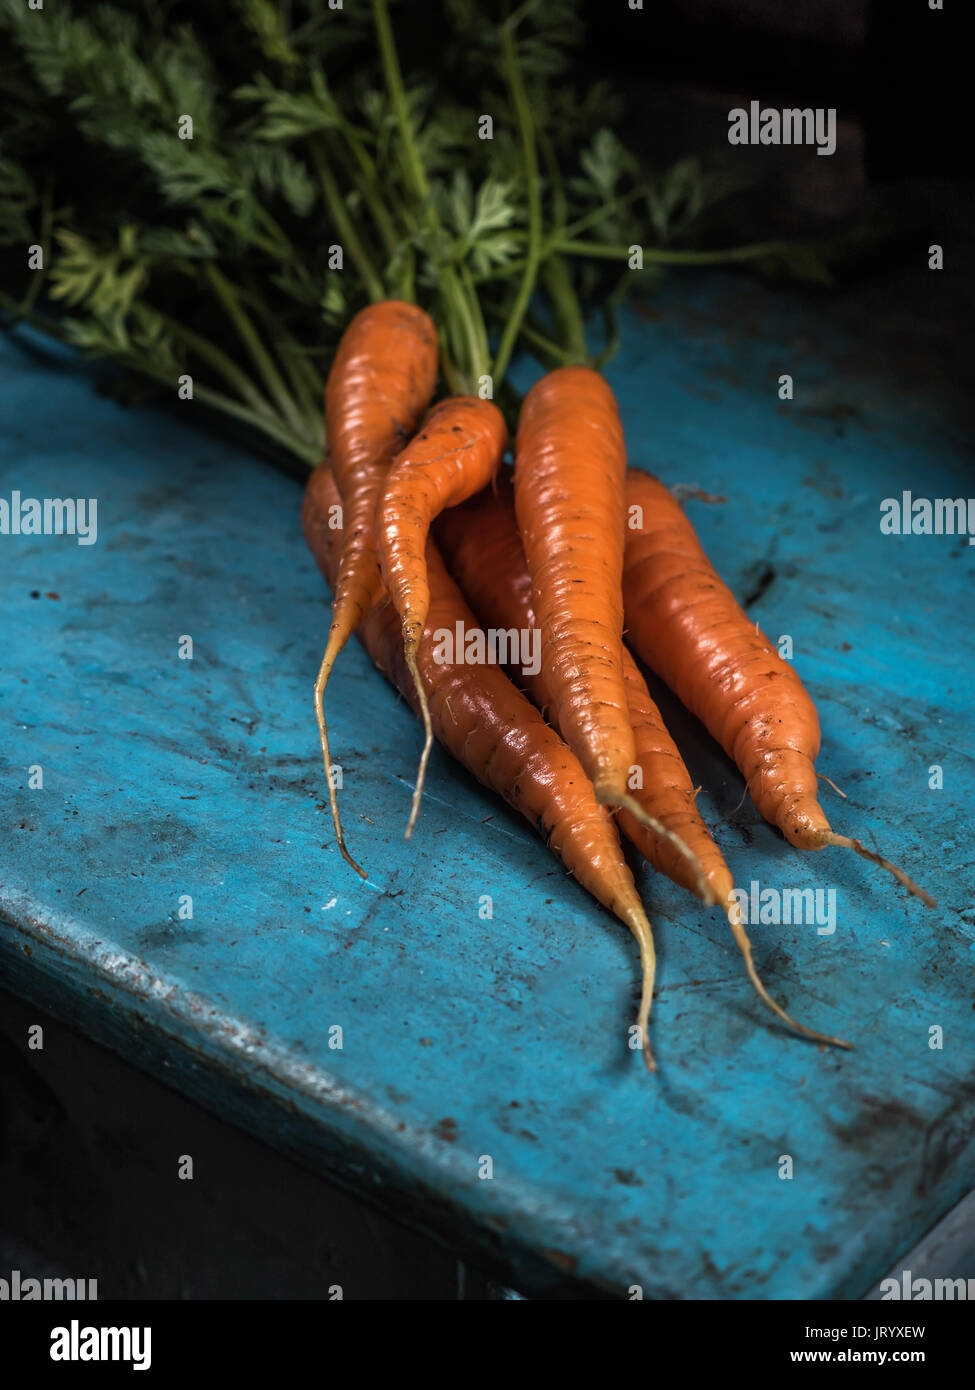 Carote mazzetto freschezza harvest carotene antiossidante della vitamina per ricette Foto Stock